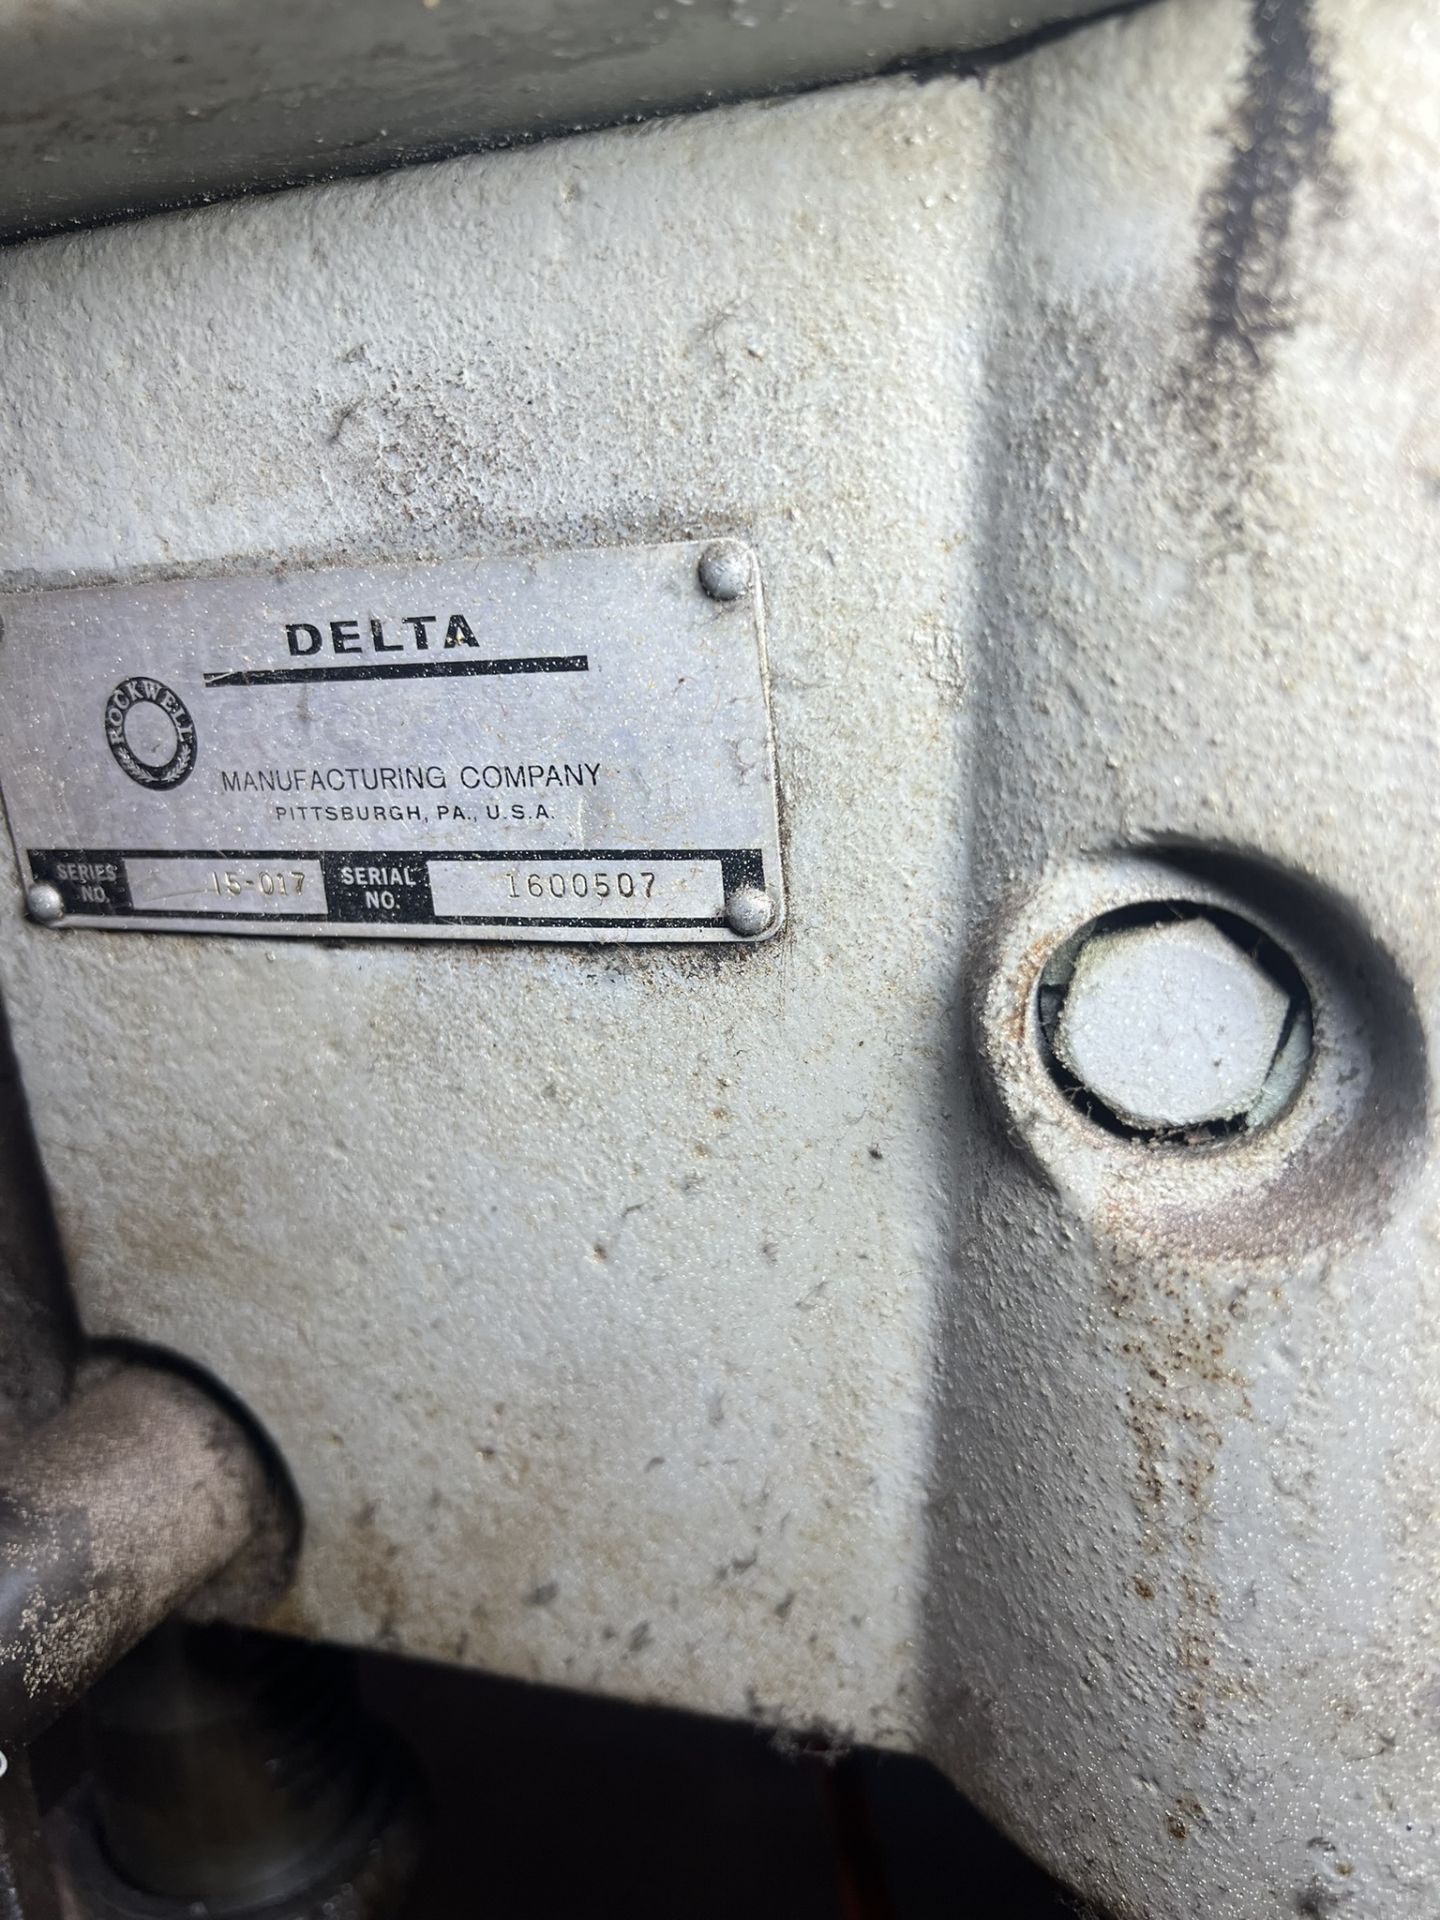 Delta Floor Drill Press Series#15-017, Serial#1600507 - Image 2 of 3